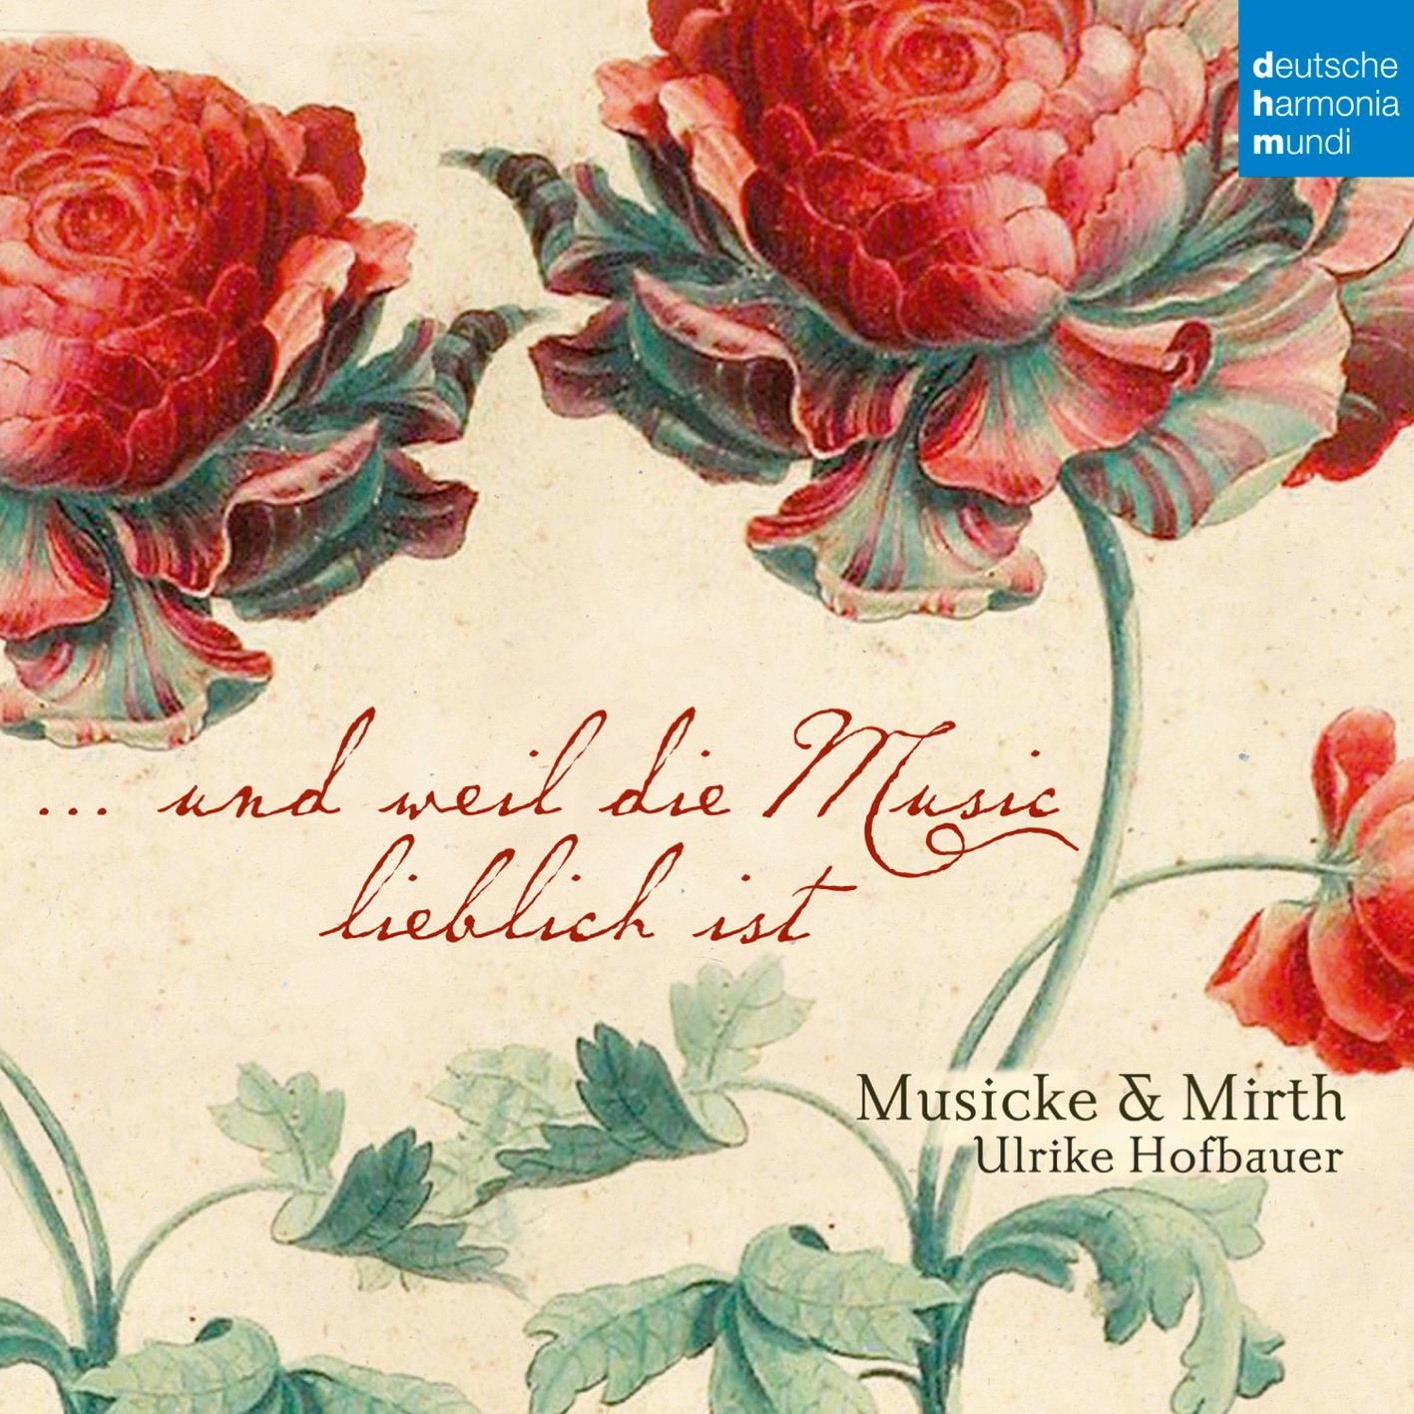 Musicke & Mirth - Balthasar Fritsch: …und weil die Music lieblich ist (2017) [Qobuz FLAC 24bit/96kHz]